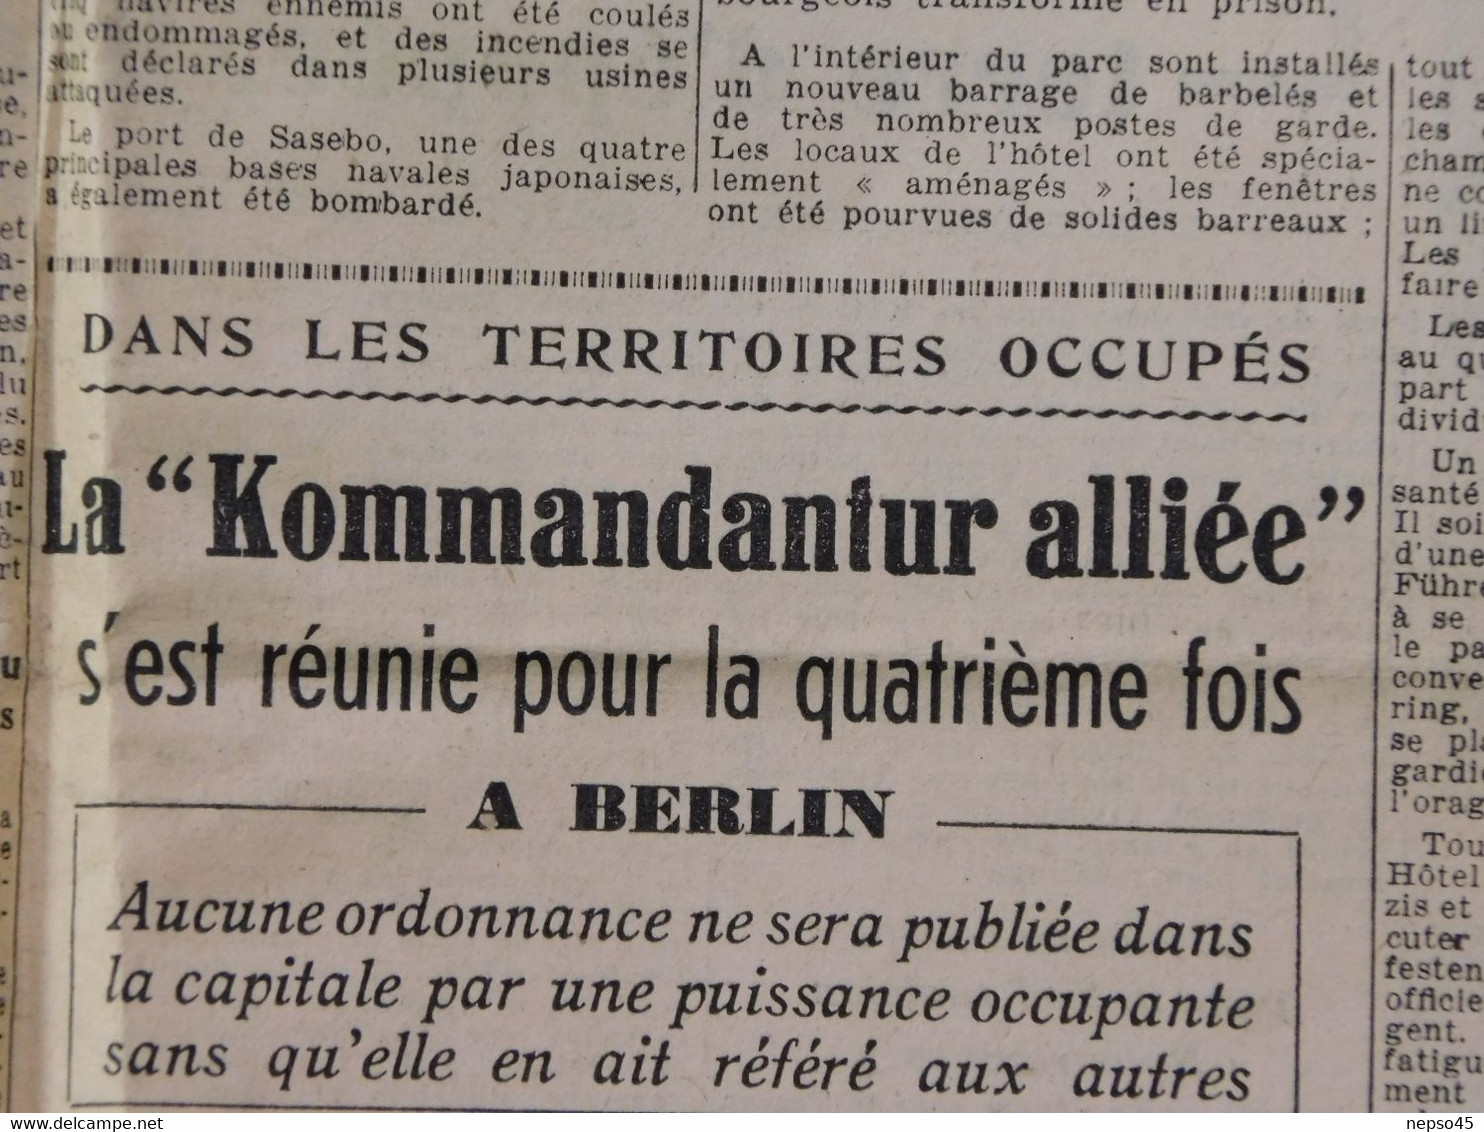 Journal des Combattants Français.Patrie.France Libre.août 1945.Laval en prison.Léon Noël charge Pétain.criminels Guerre.